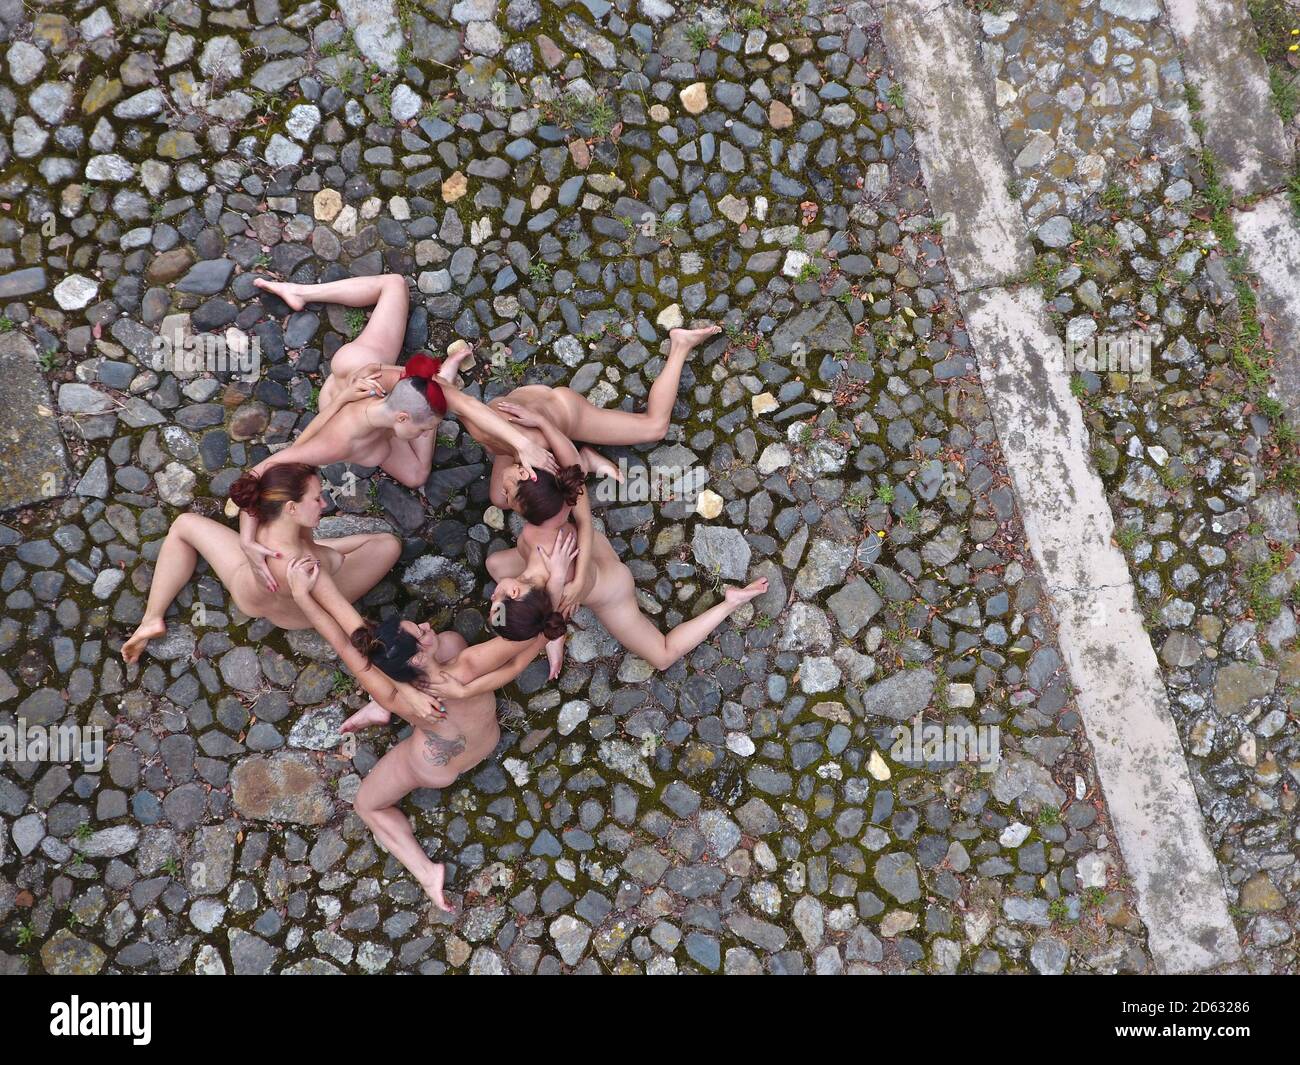 Formación estelar creada por un grupo de cuatro mujeres desnudas entrelazadas. Foto de stock